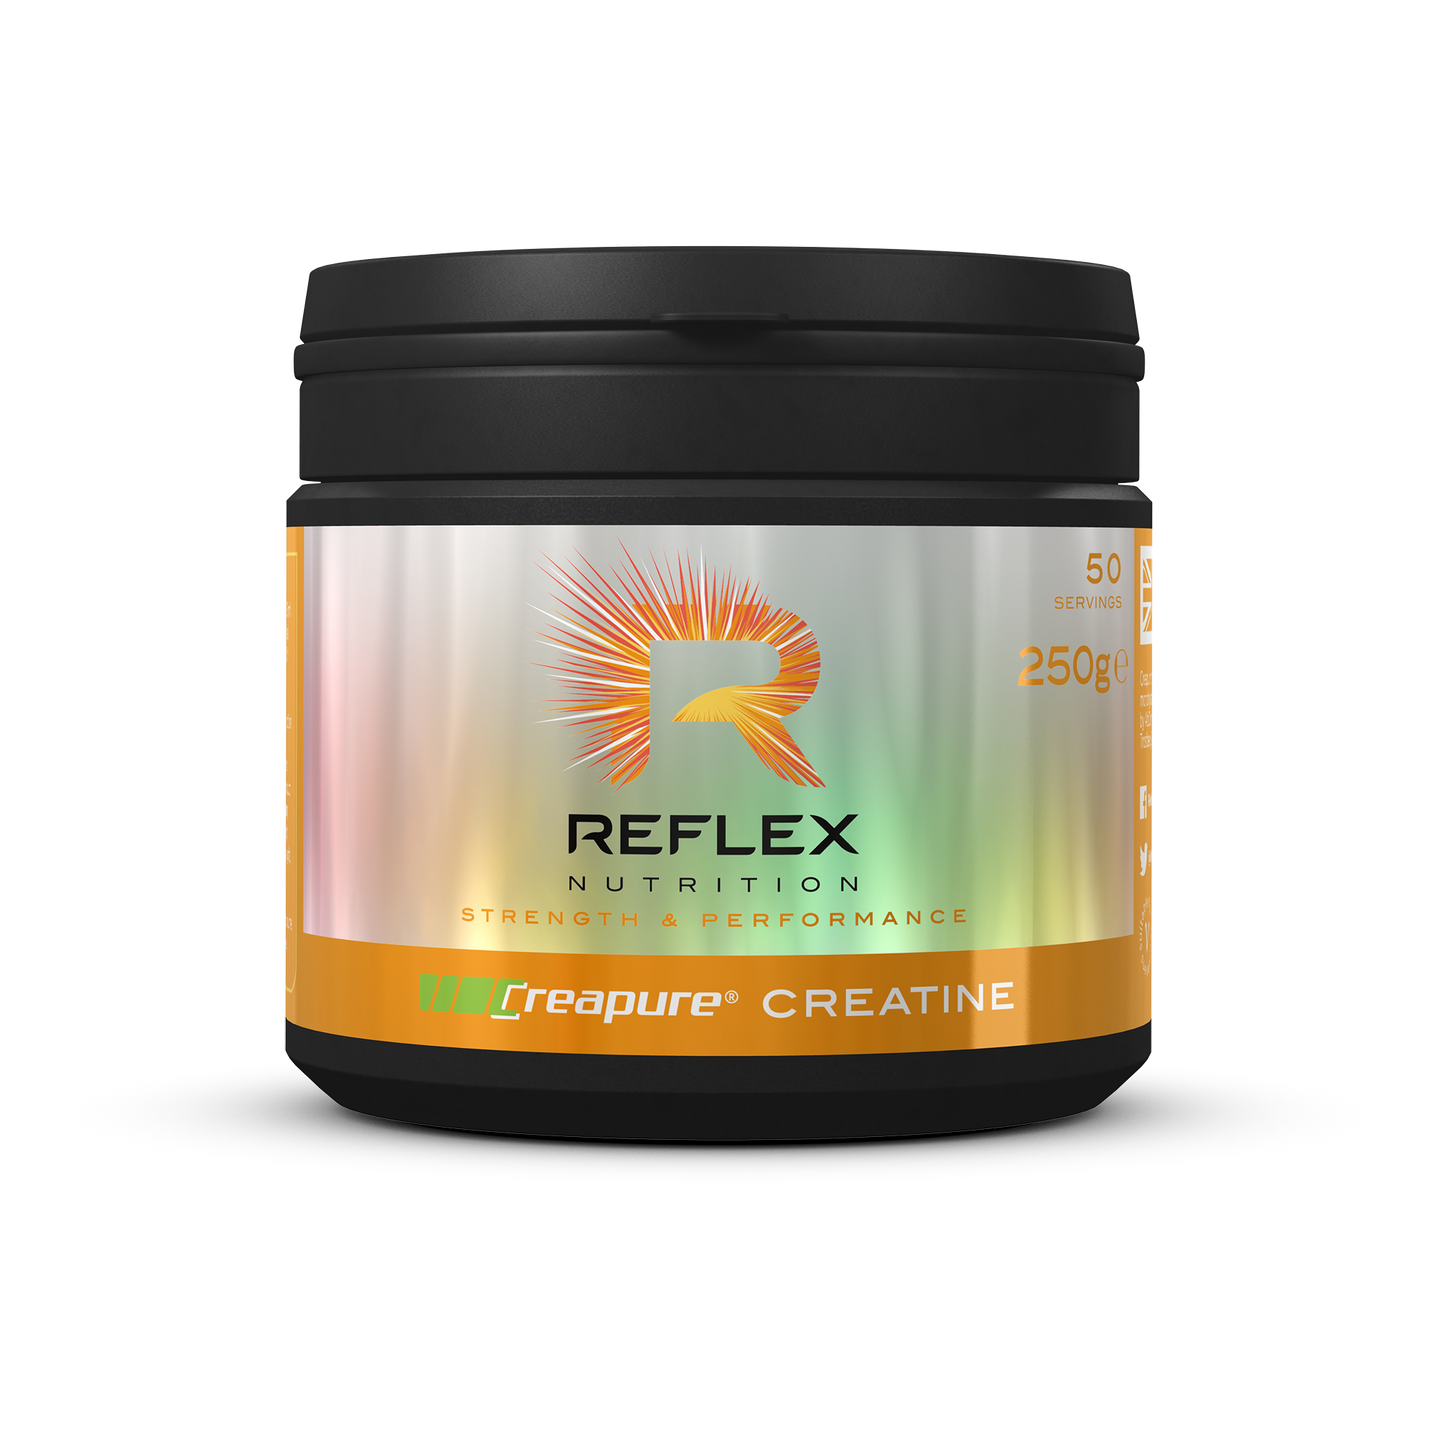 Reflex Nutrition Creatine Monohydrate - 250g